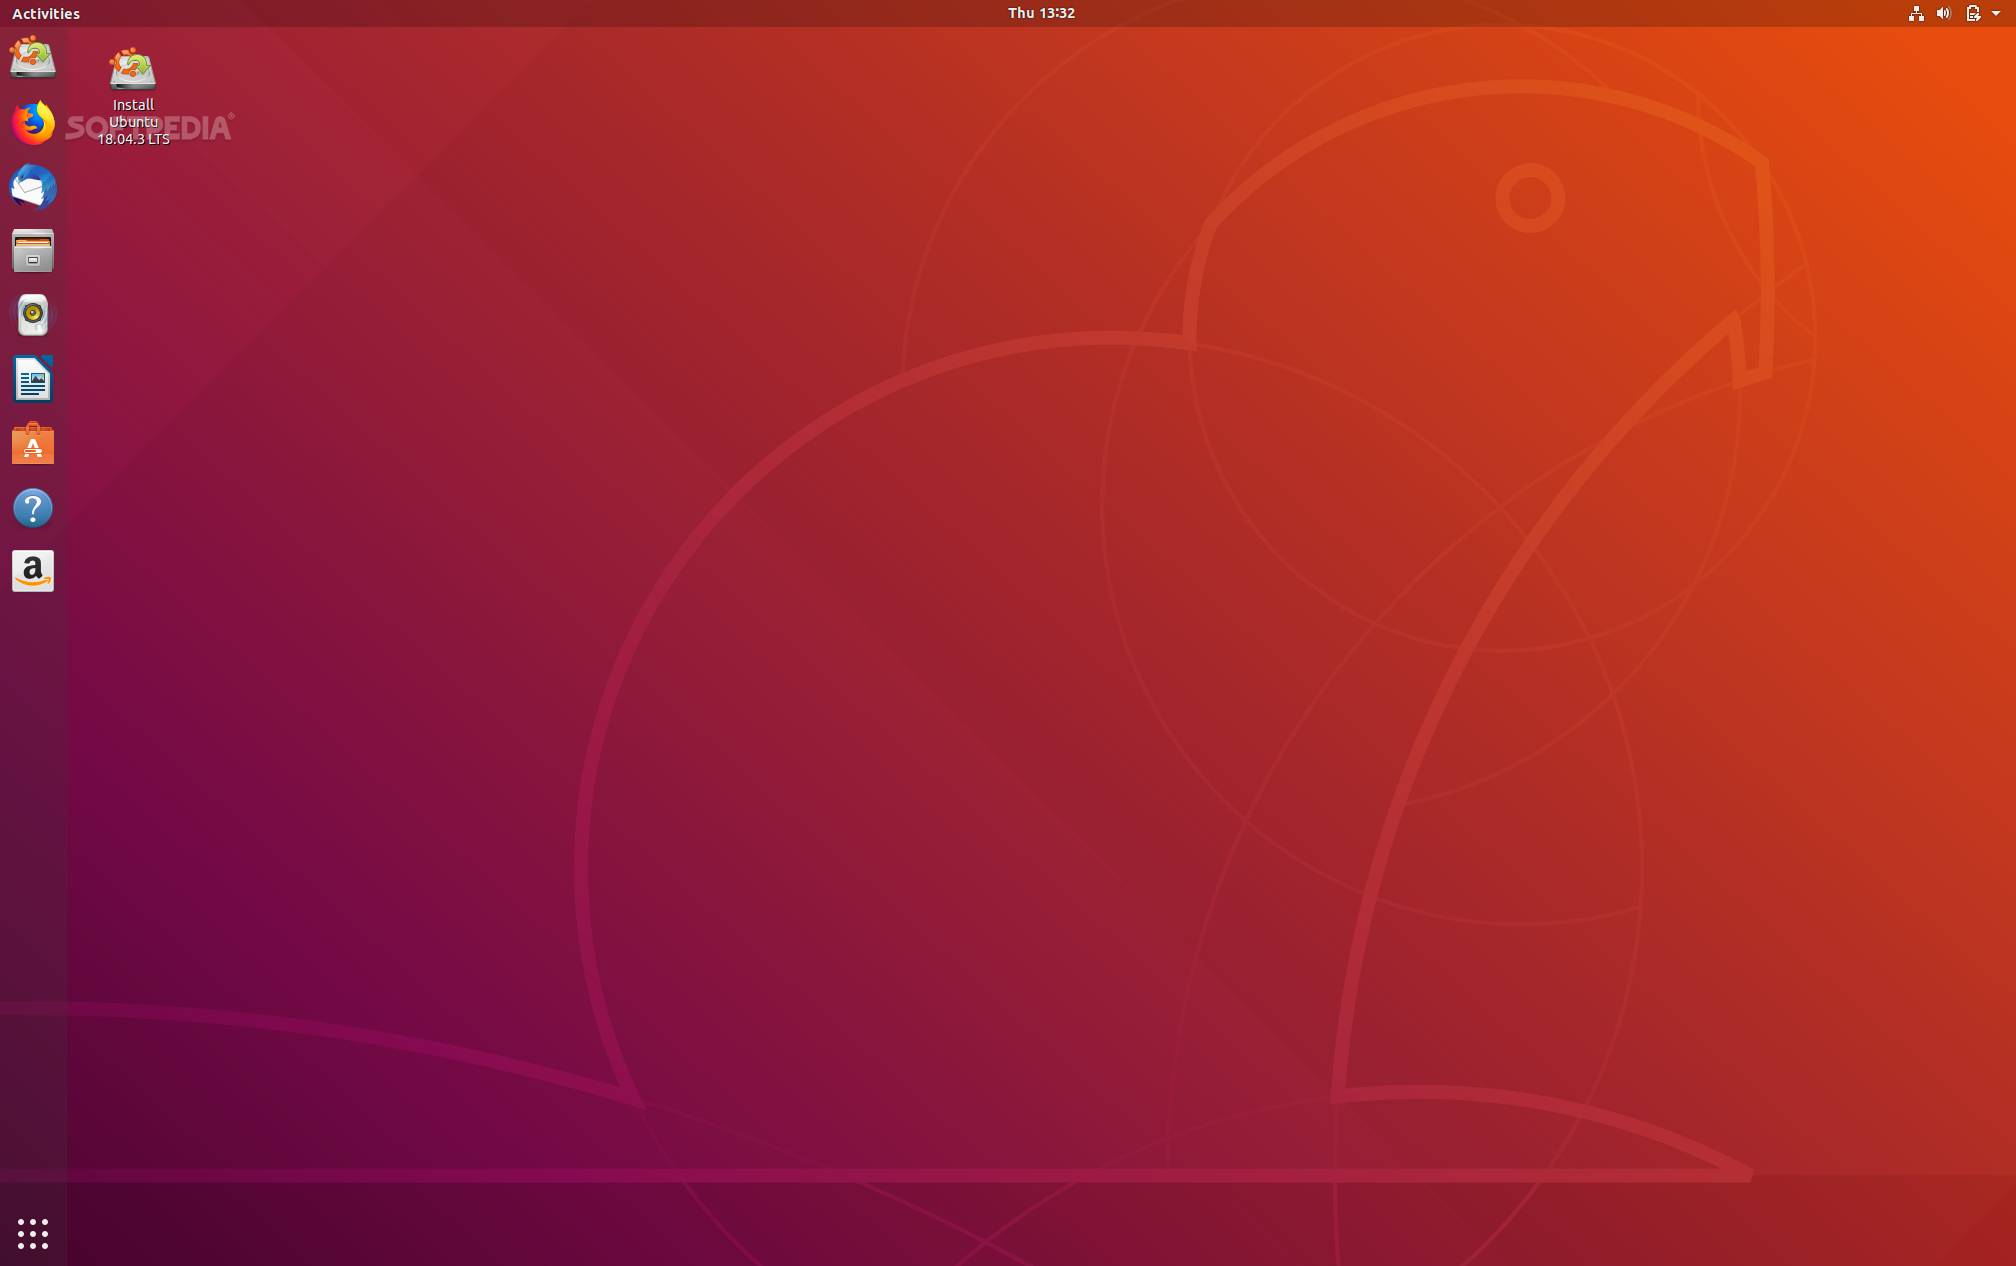 ubuntu 18.04.4 download